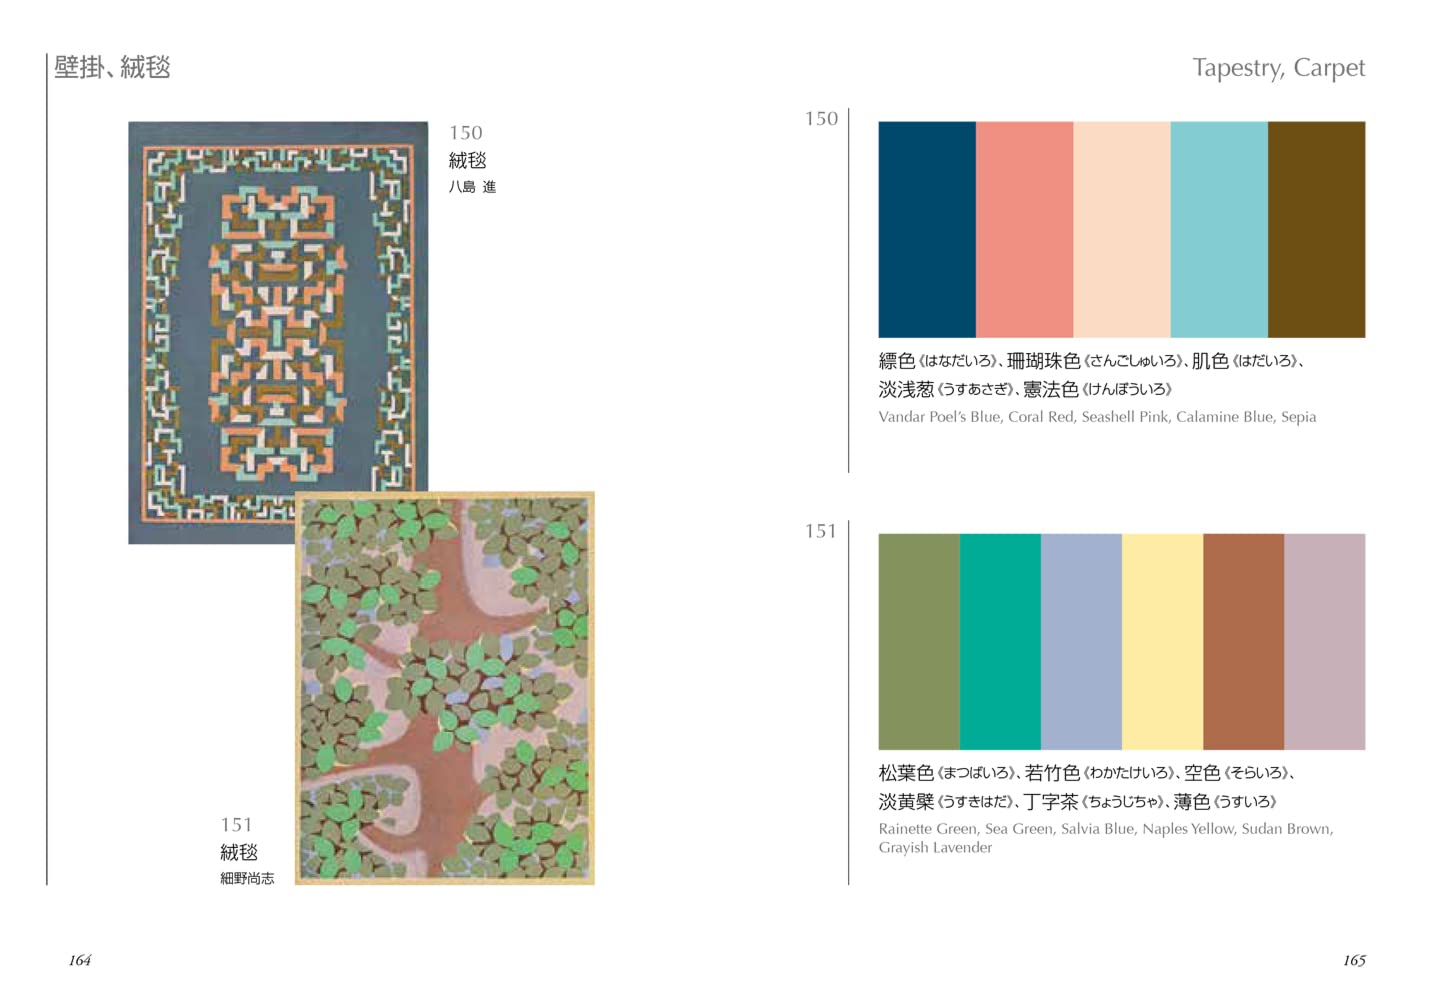 A Dictionary of Color Combinations vol. 2 - Sanzo Wada